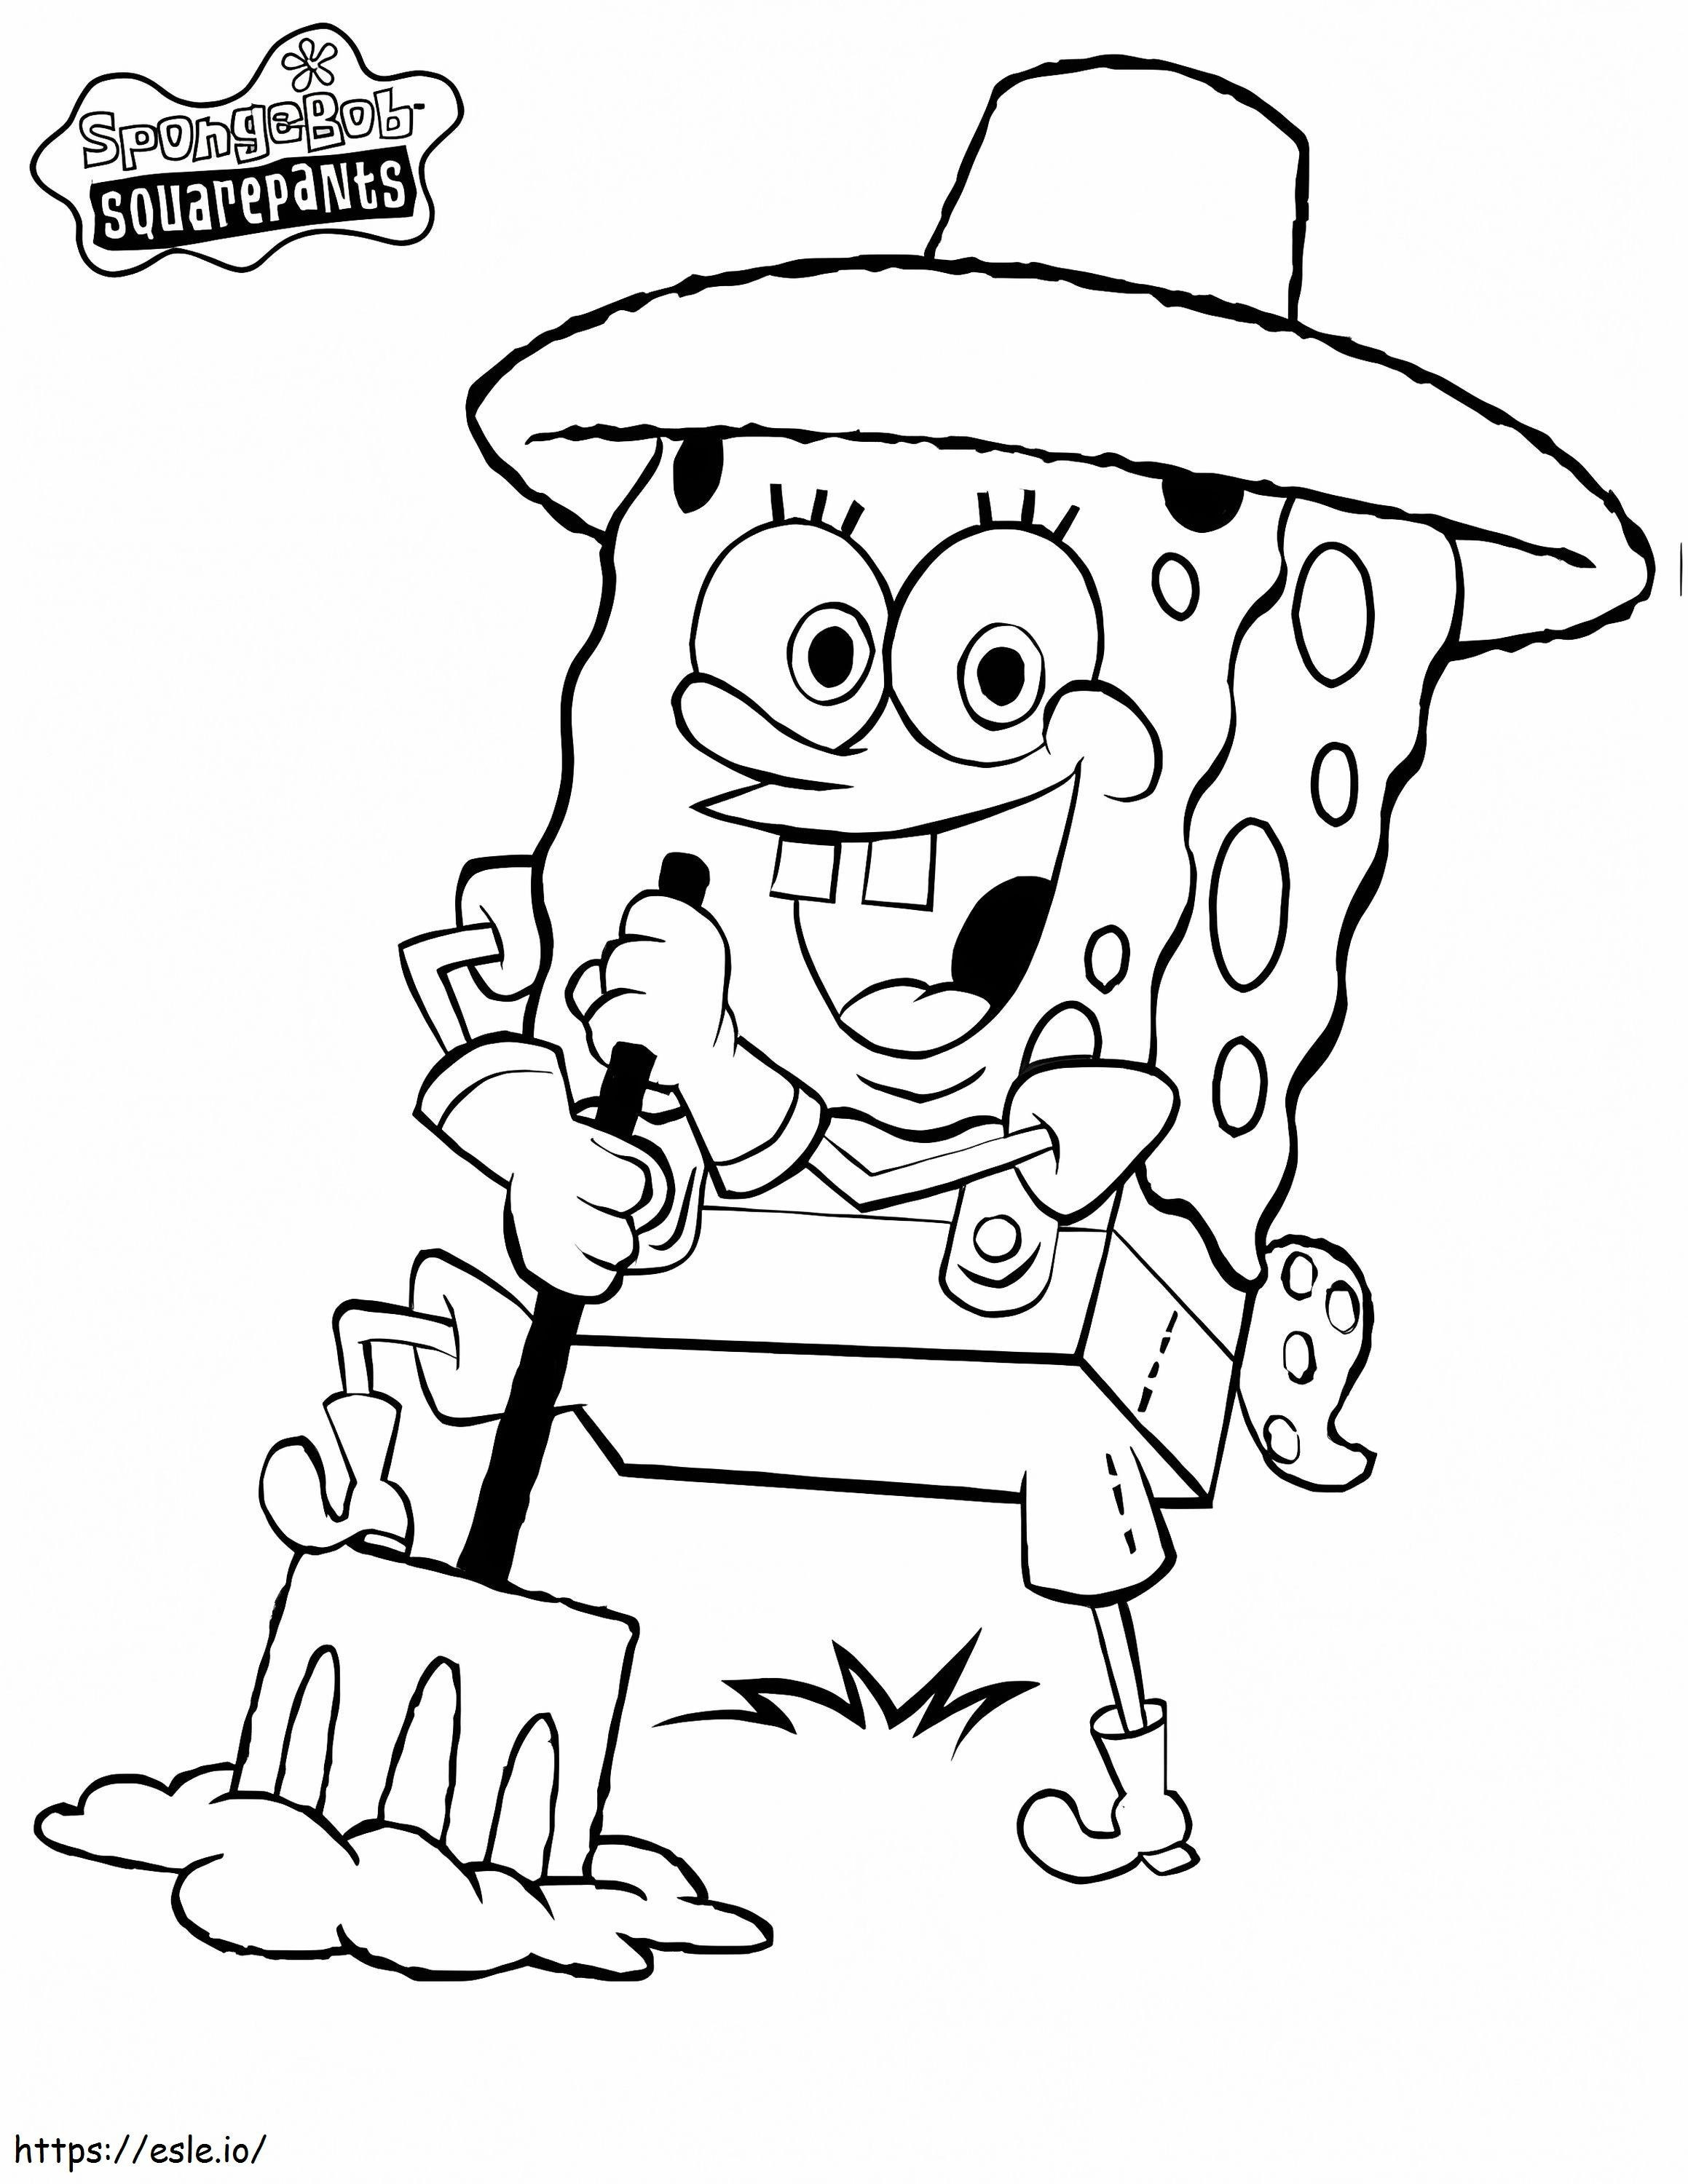 Farmer Spongebob coloring page